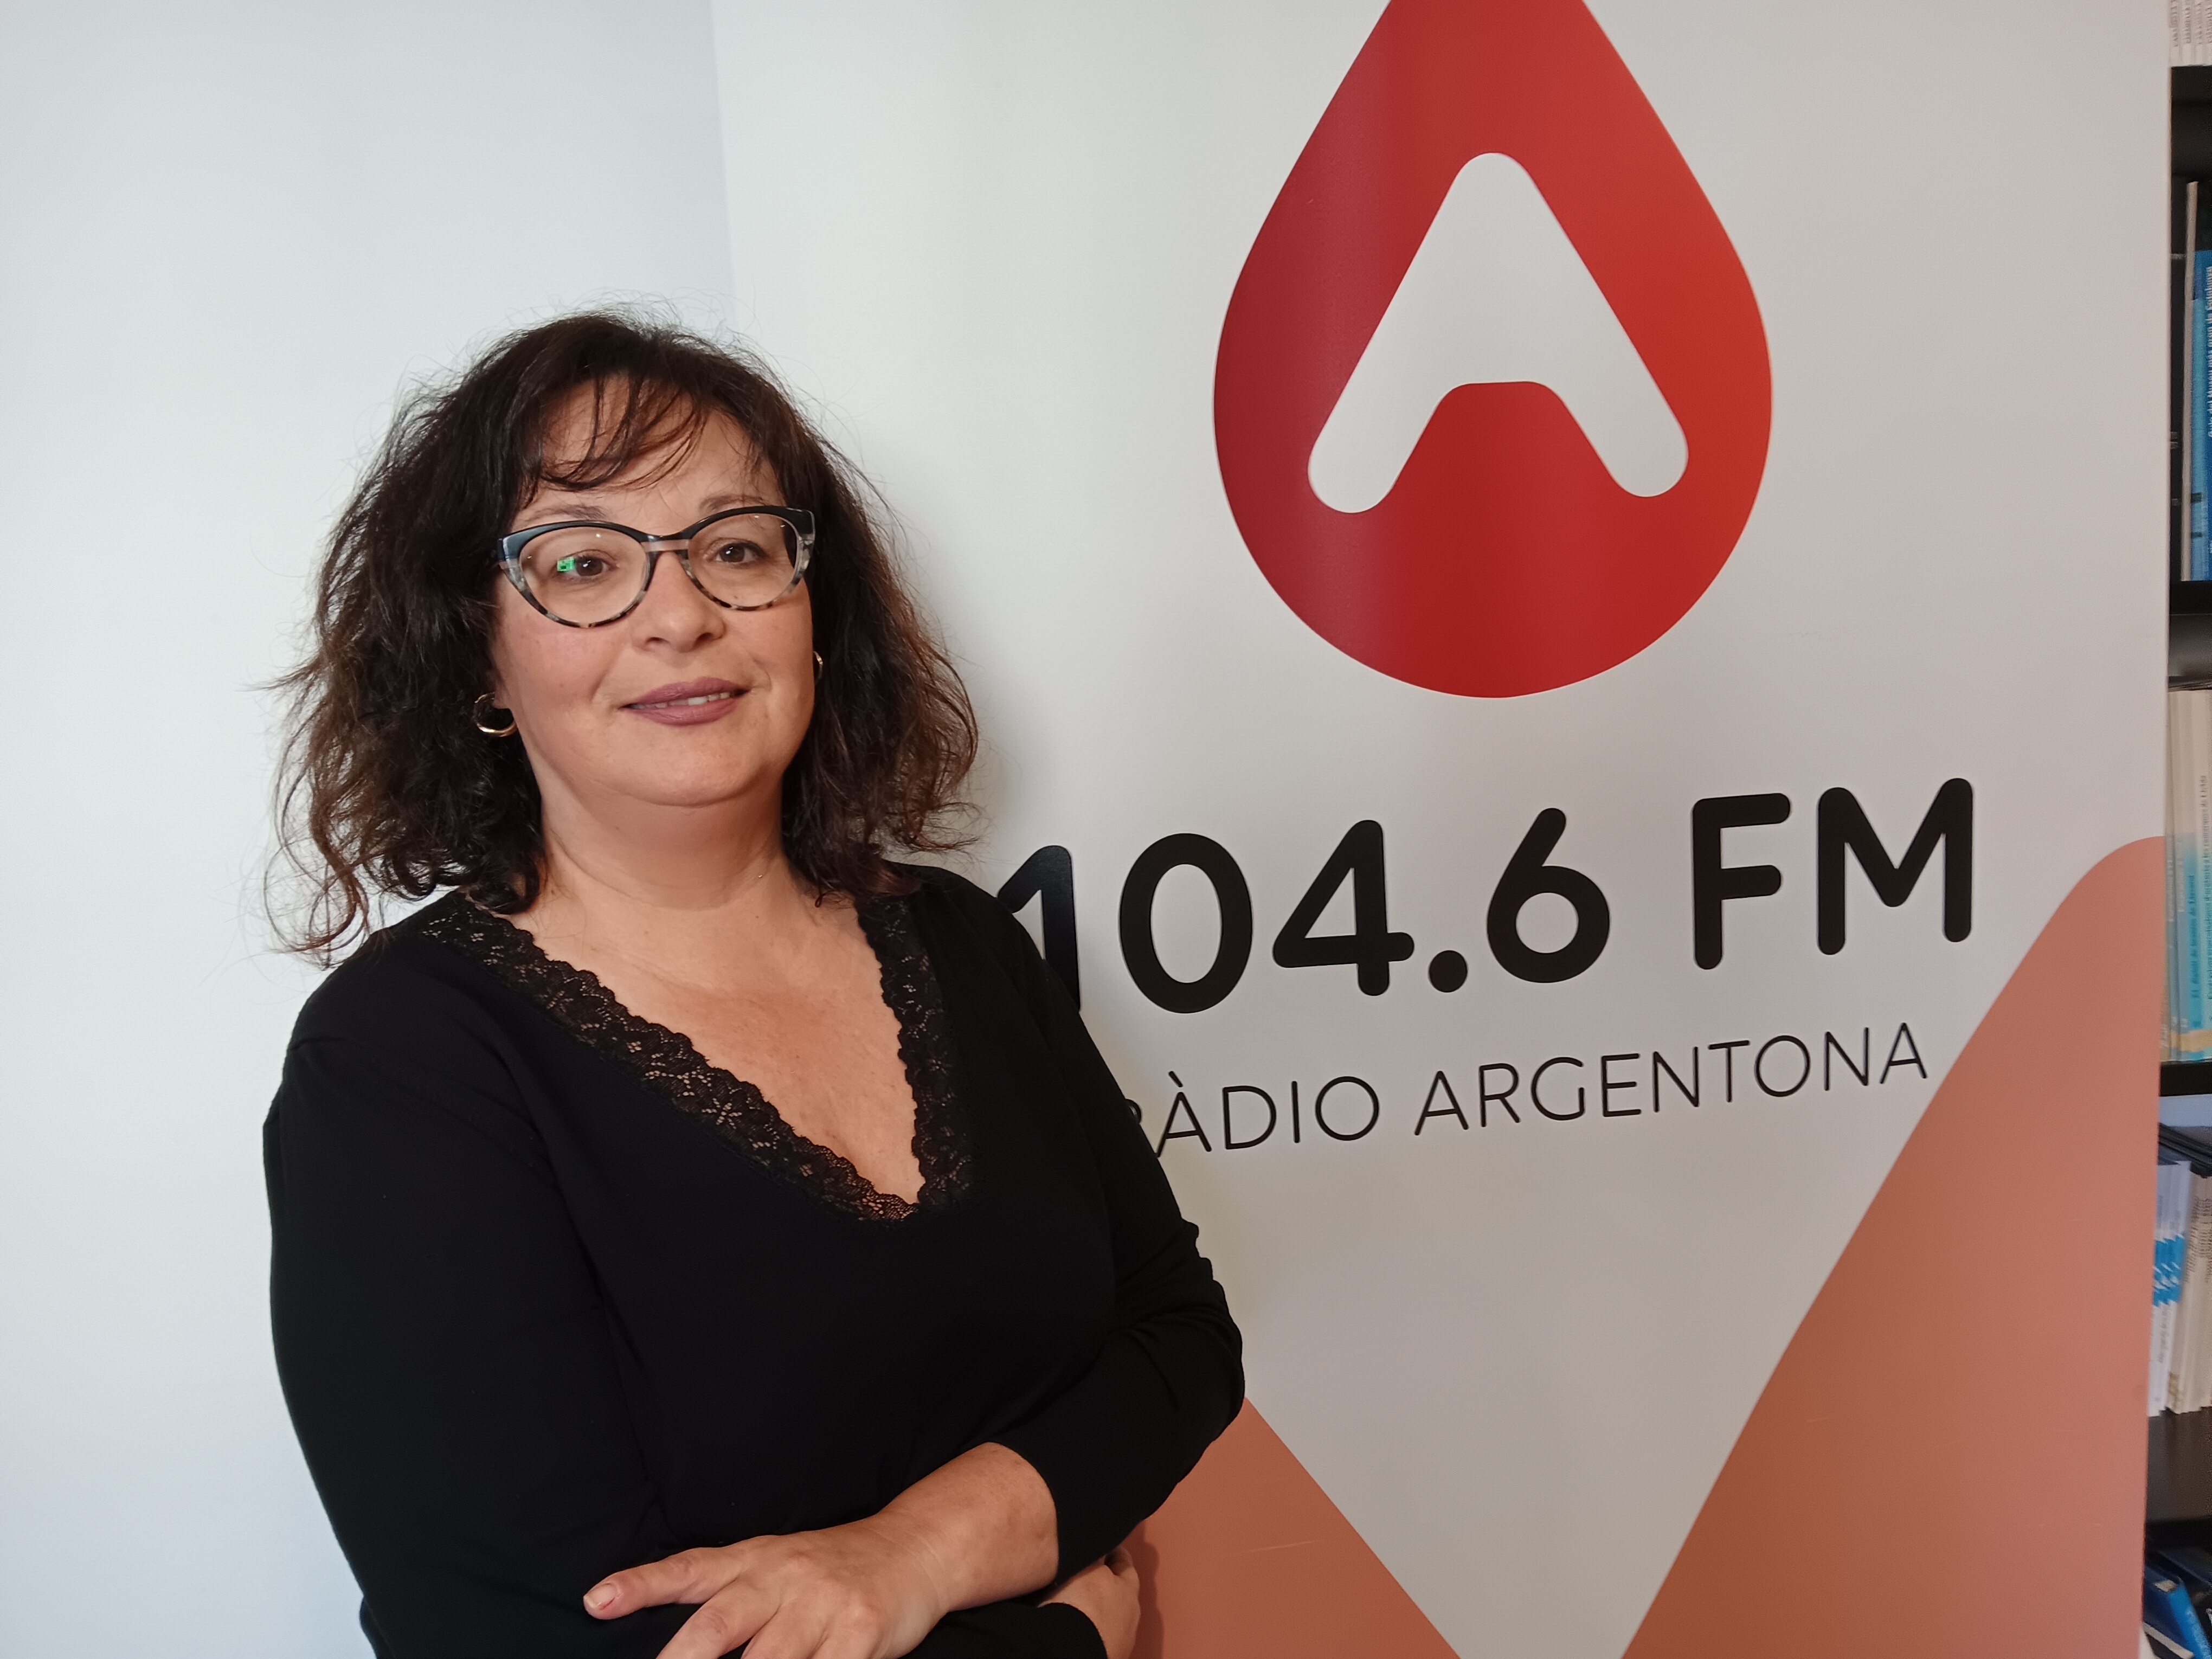 Susana López Regidora del PSC Ajuntament d'Argentona